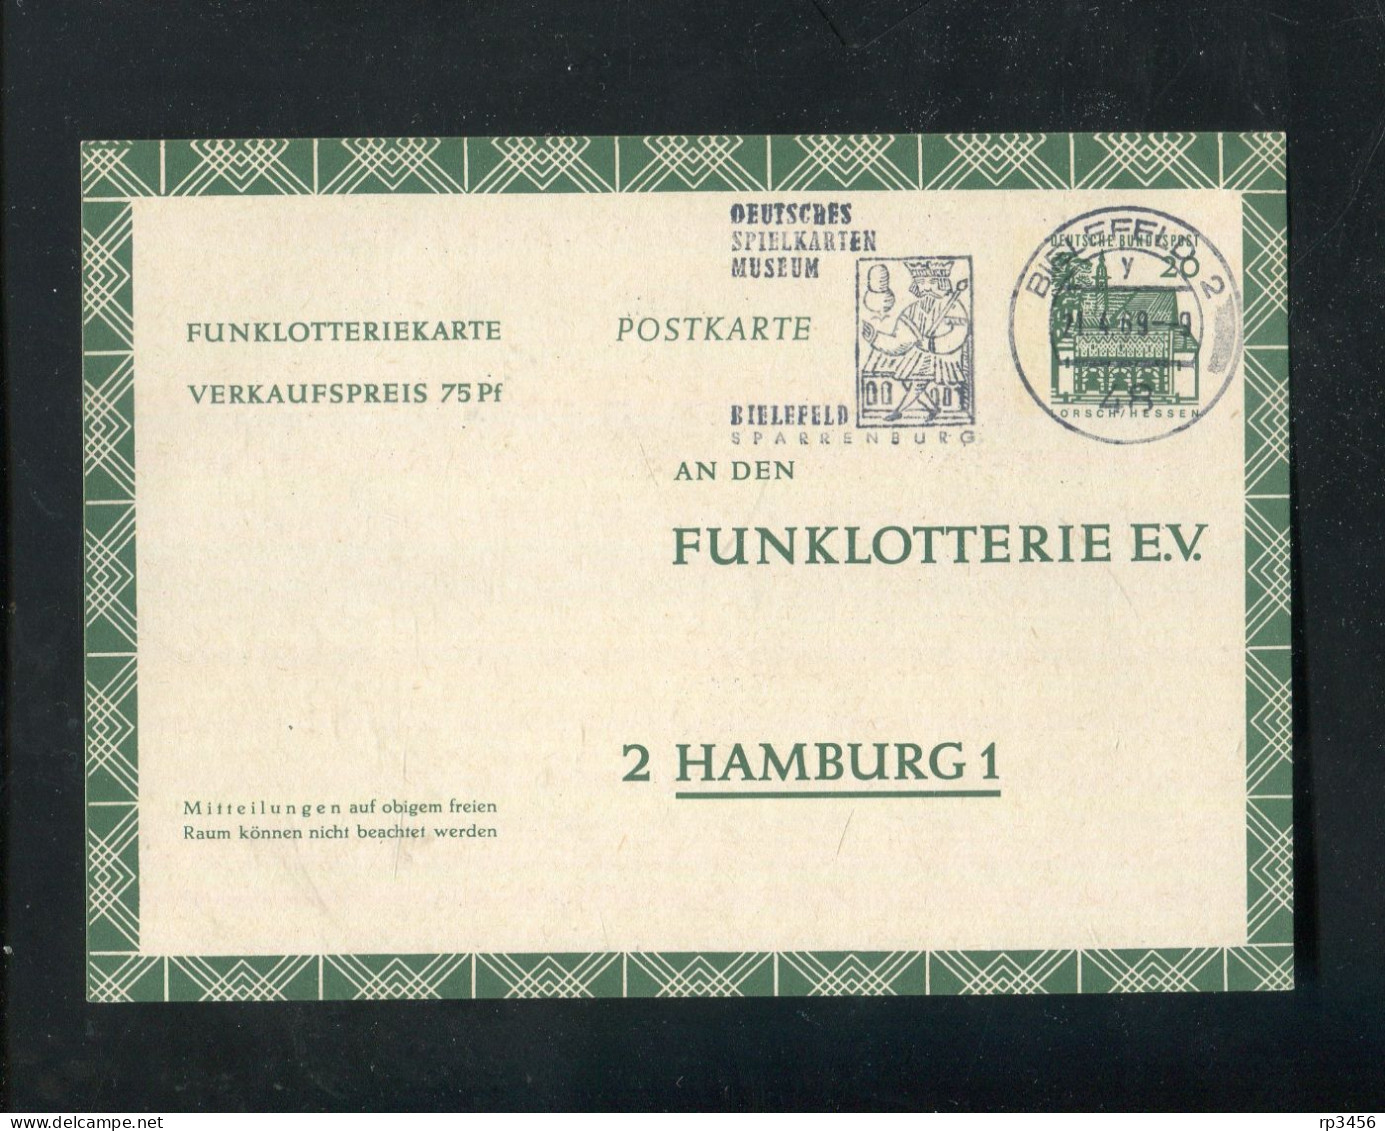 "BUNDESREPUBLIK DEUTSCHLAND" 1969, Funklotterie-Postkarte Stempel "BIELEFELD, Spielkartenmuseum" (R1089) - Postkarten - Gebraucht